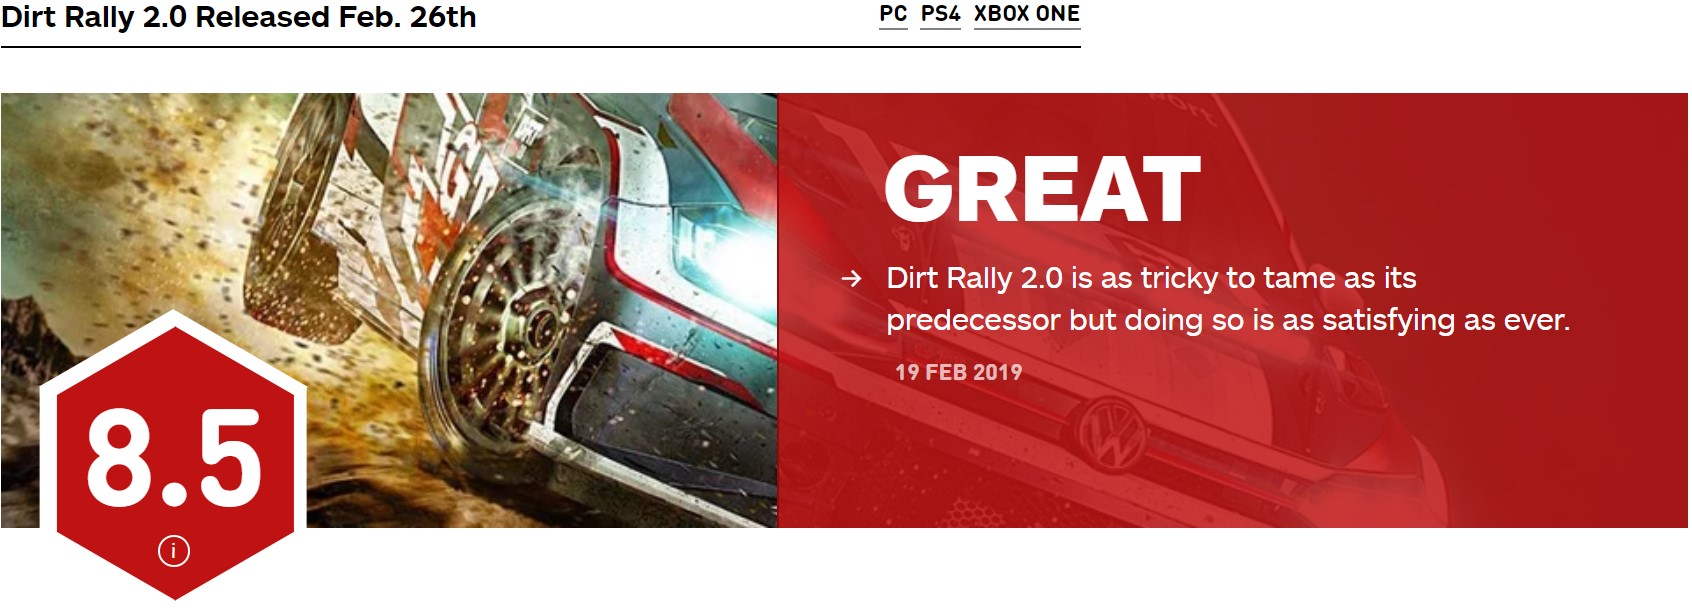 《尘土推力赛2.0》媒体评分化禁 获IGN 8.5分好评